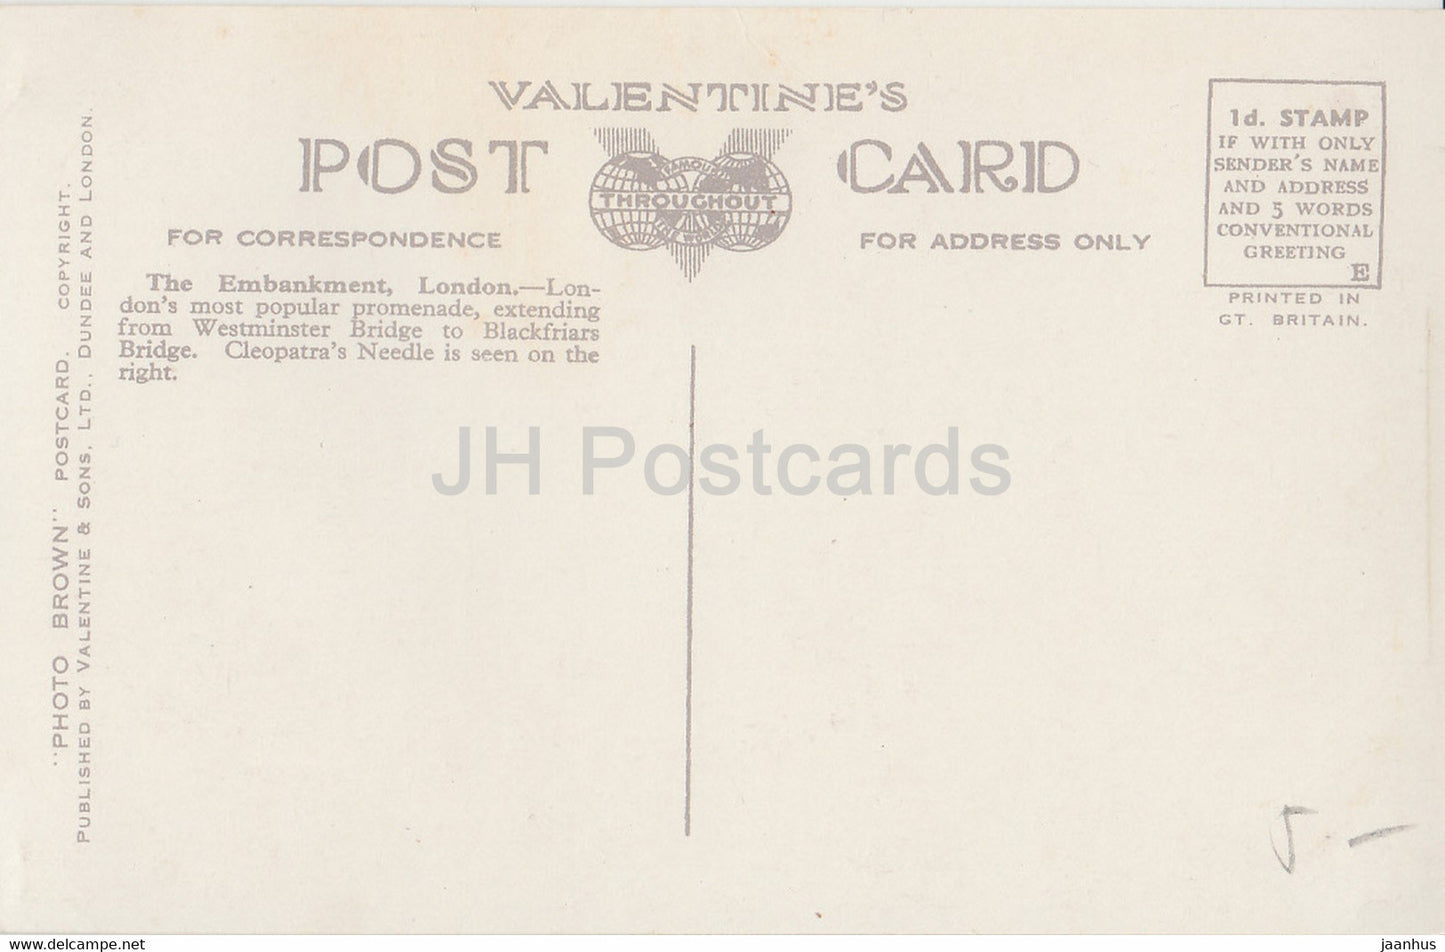 London - Thames Embankment - Straßenbahn - Auto - Valentine - 2566 - alte Postkarte - England - Vereinigtes Königreich - unbenutzt